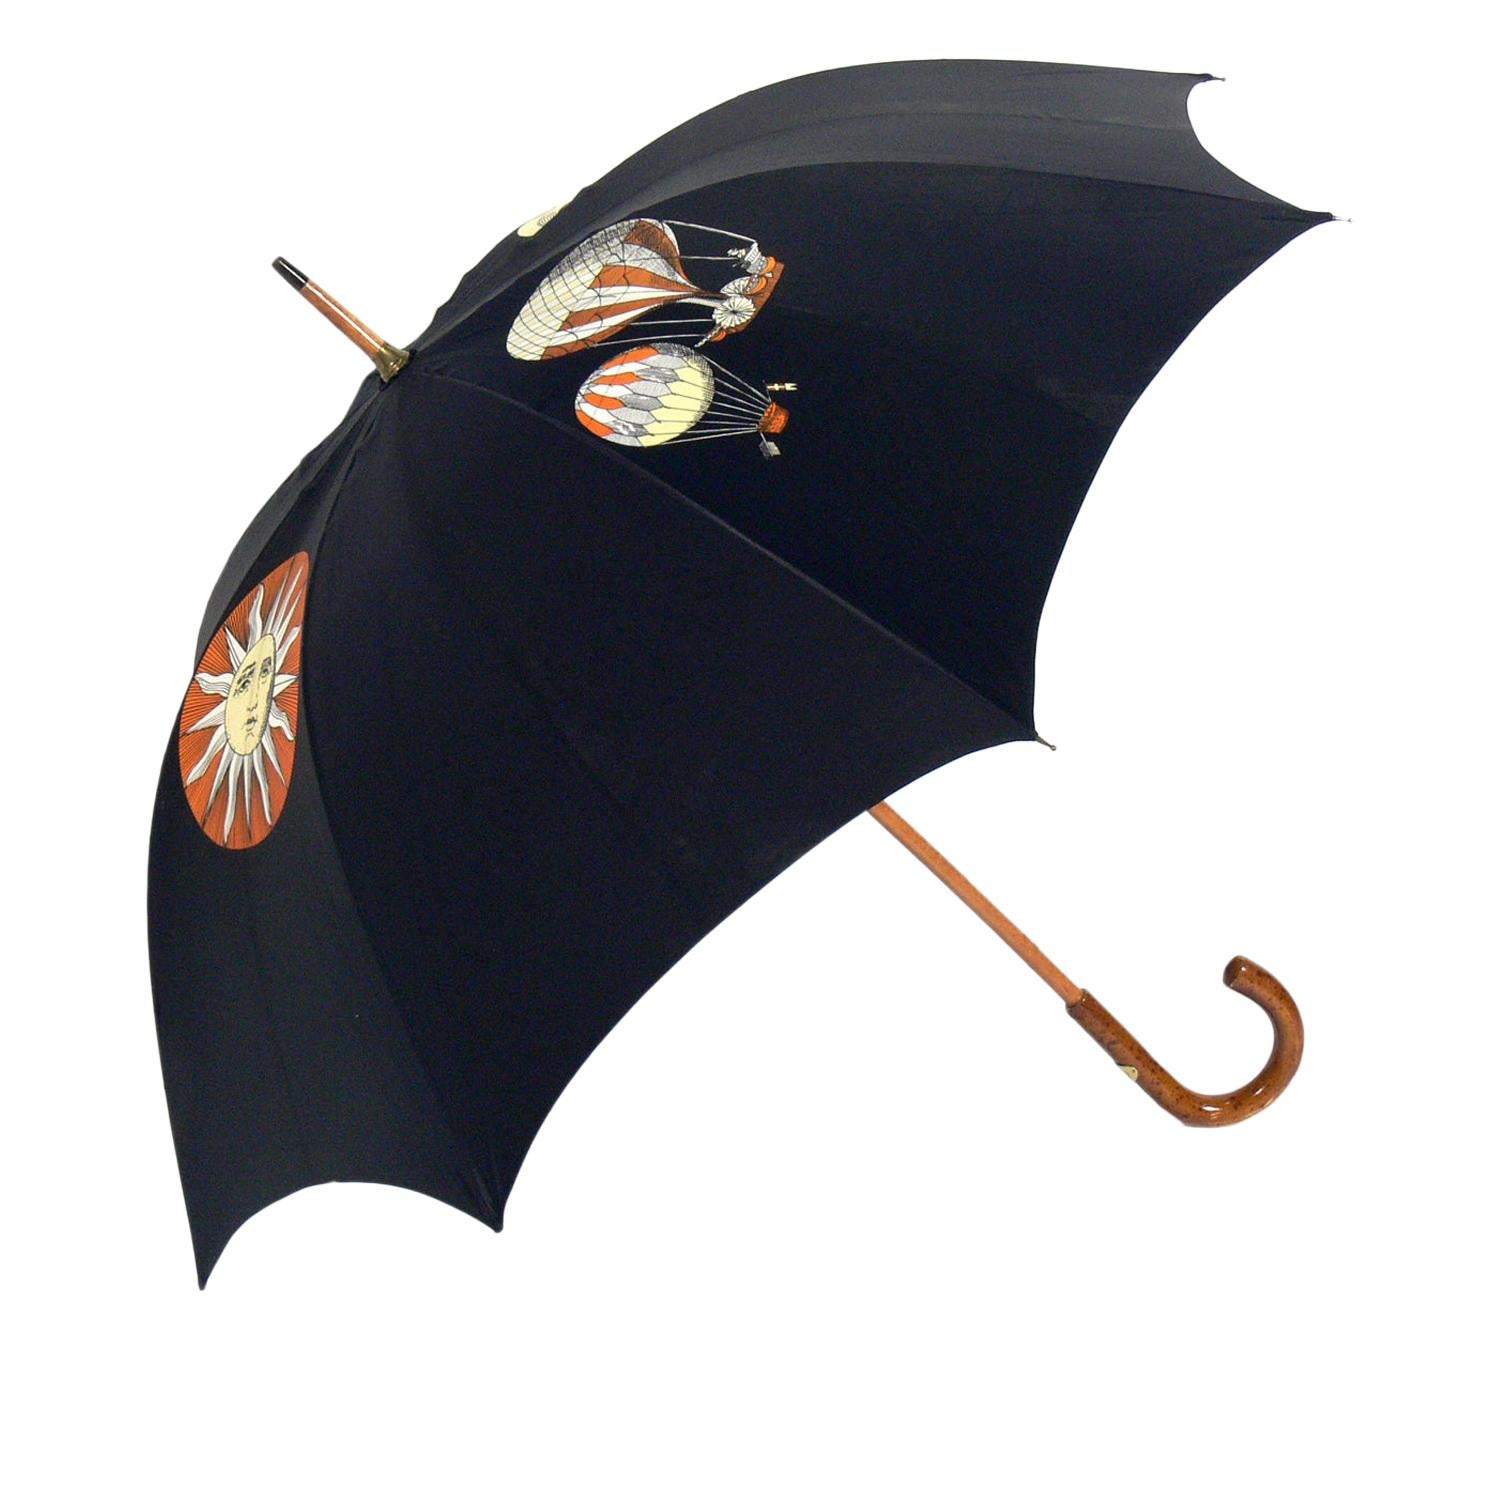 Piero Fornasetti Umbrella